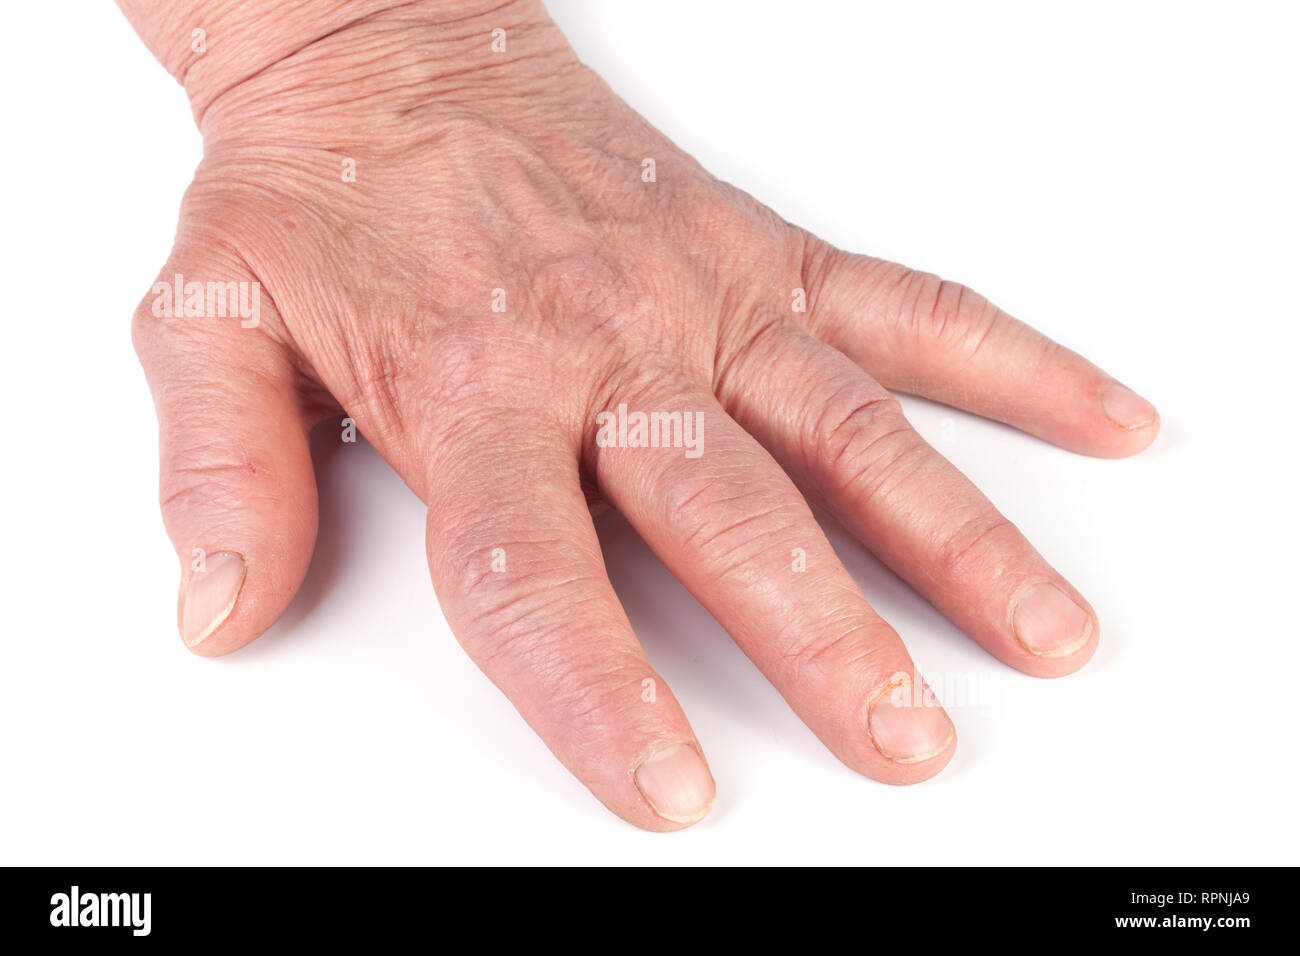 Poliartrite reumatoide delle mani isolati su sfondo bianco Foto Stock